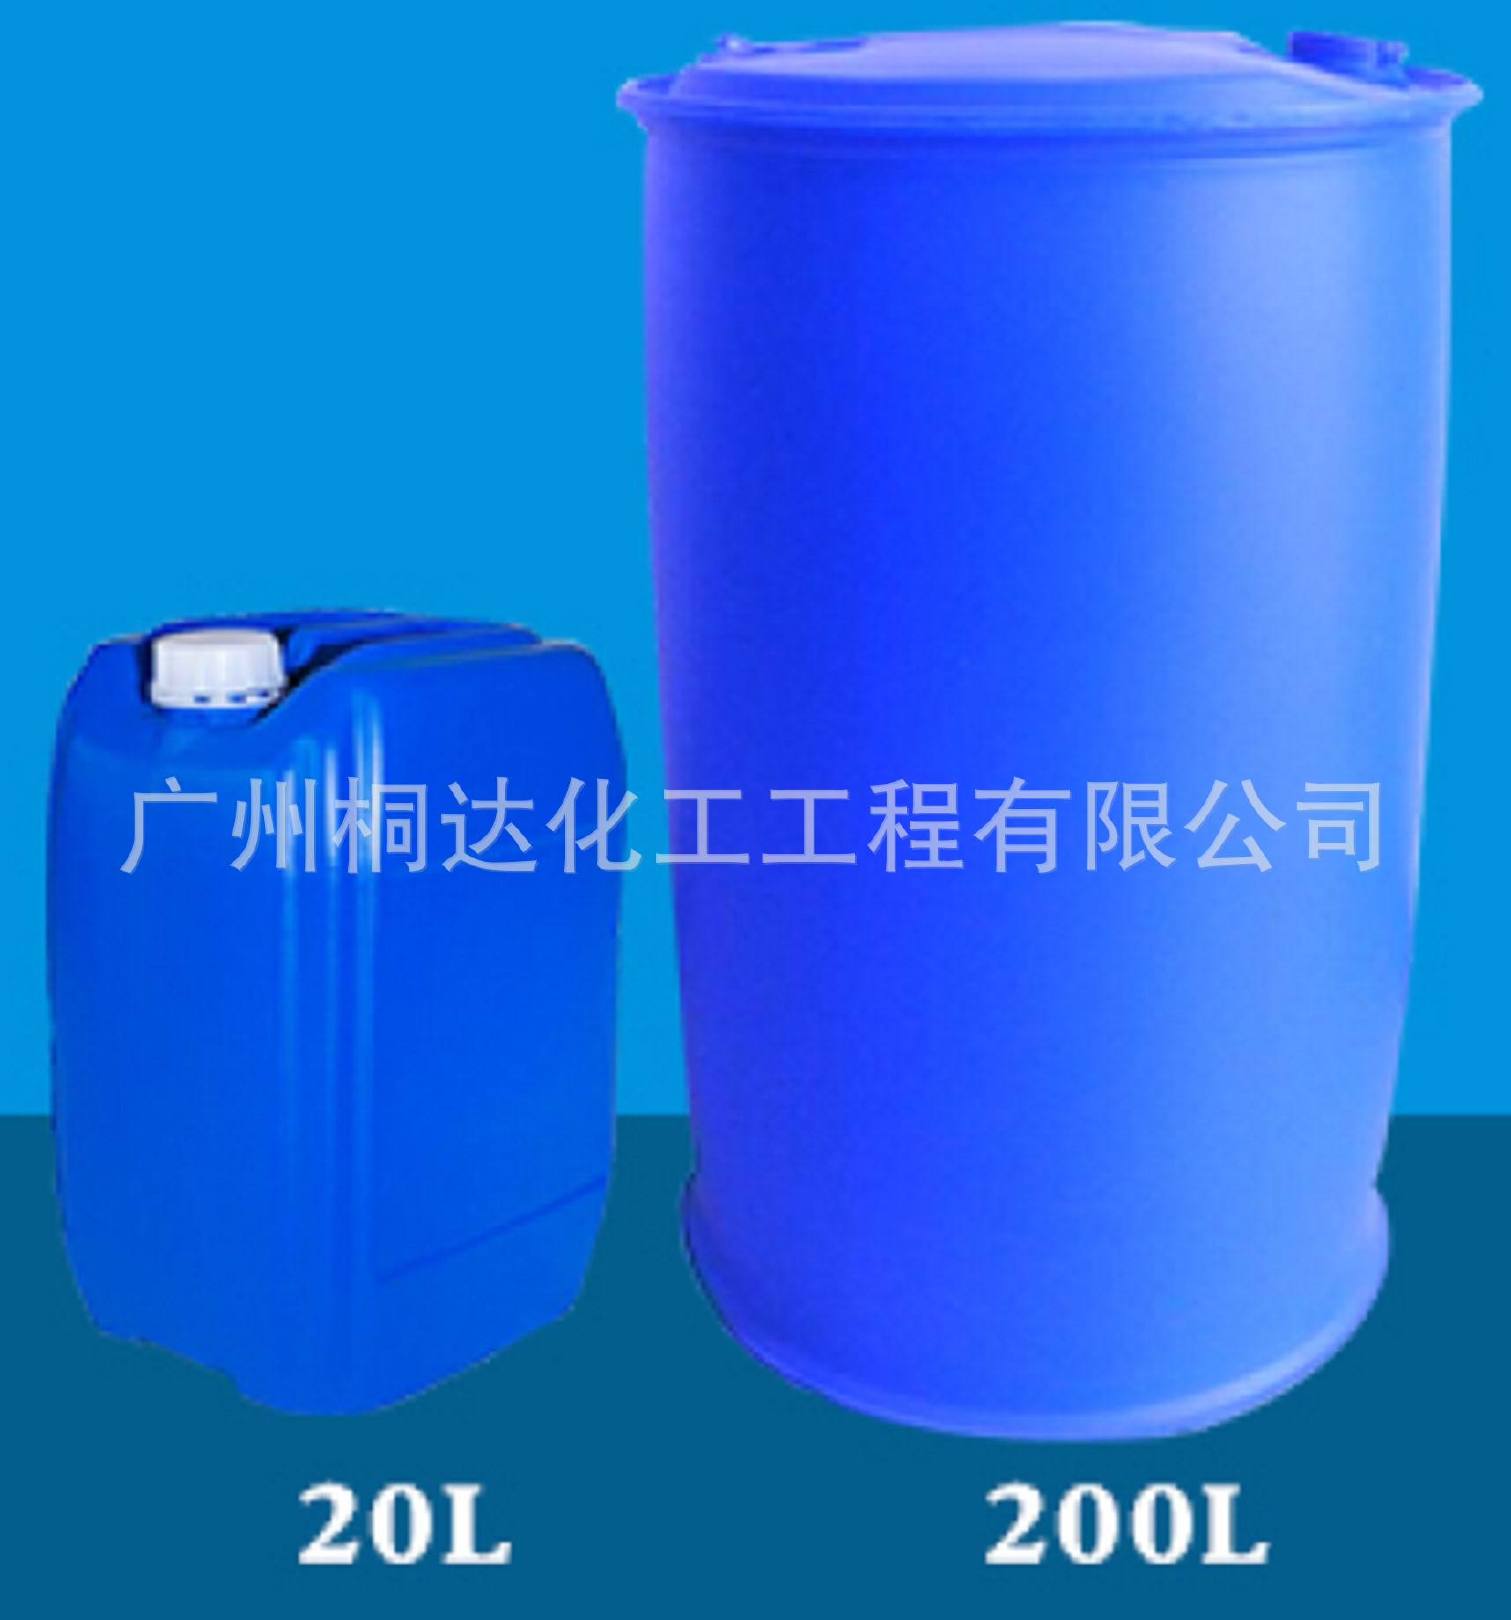 RRJ-211 柔软剂、织物超蓬松柔软剂 适用于纯棉、涤纶、涤棉等示例图6